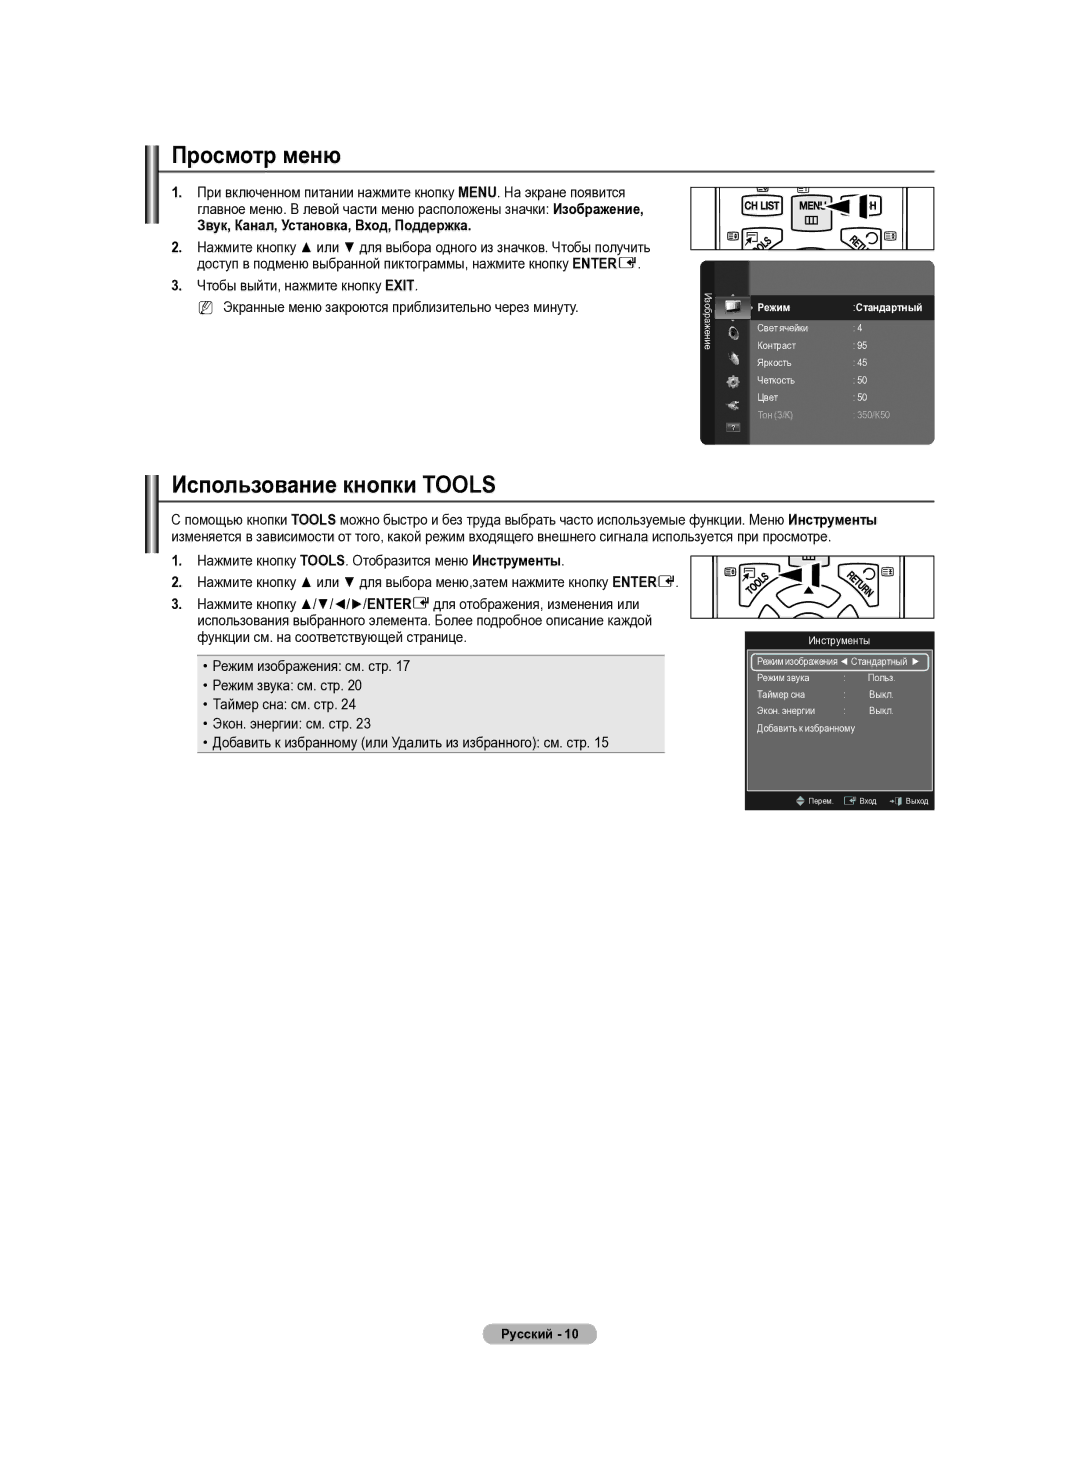 Samsung PS50B430P, PS42B430P manual Просмотр меню, Использование кнопки Tools, Звук, Канал, Установка, Вход, Поддержка 